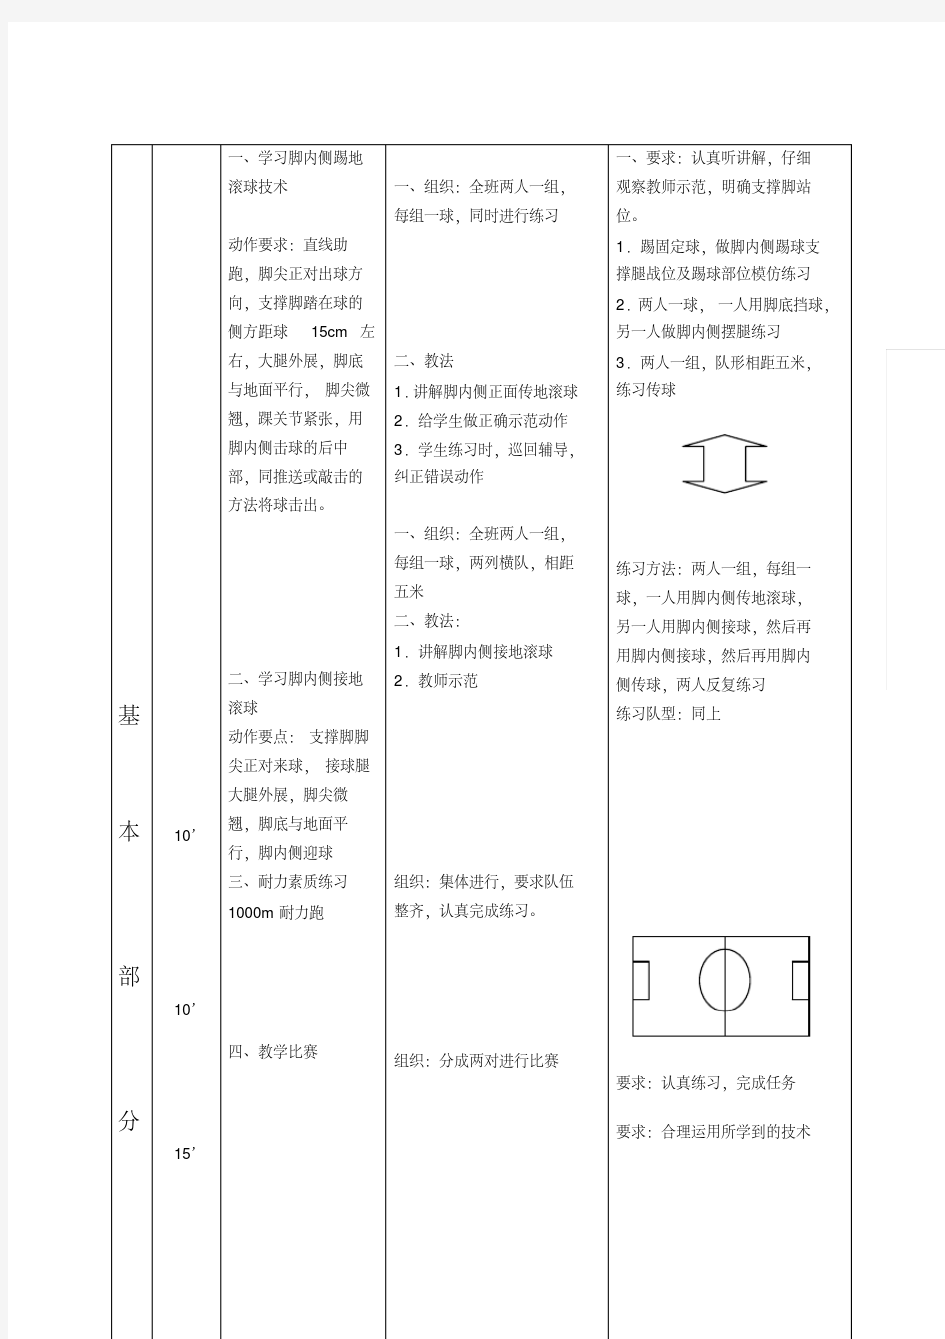 最新初中足球课教案全集.pdf